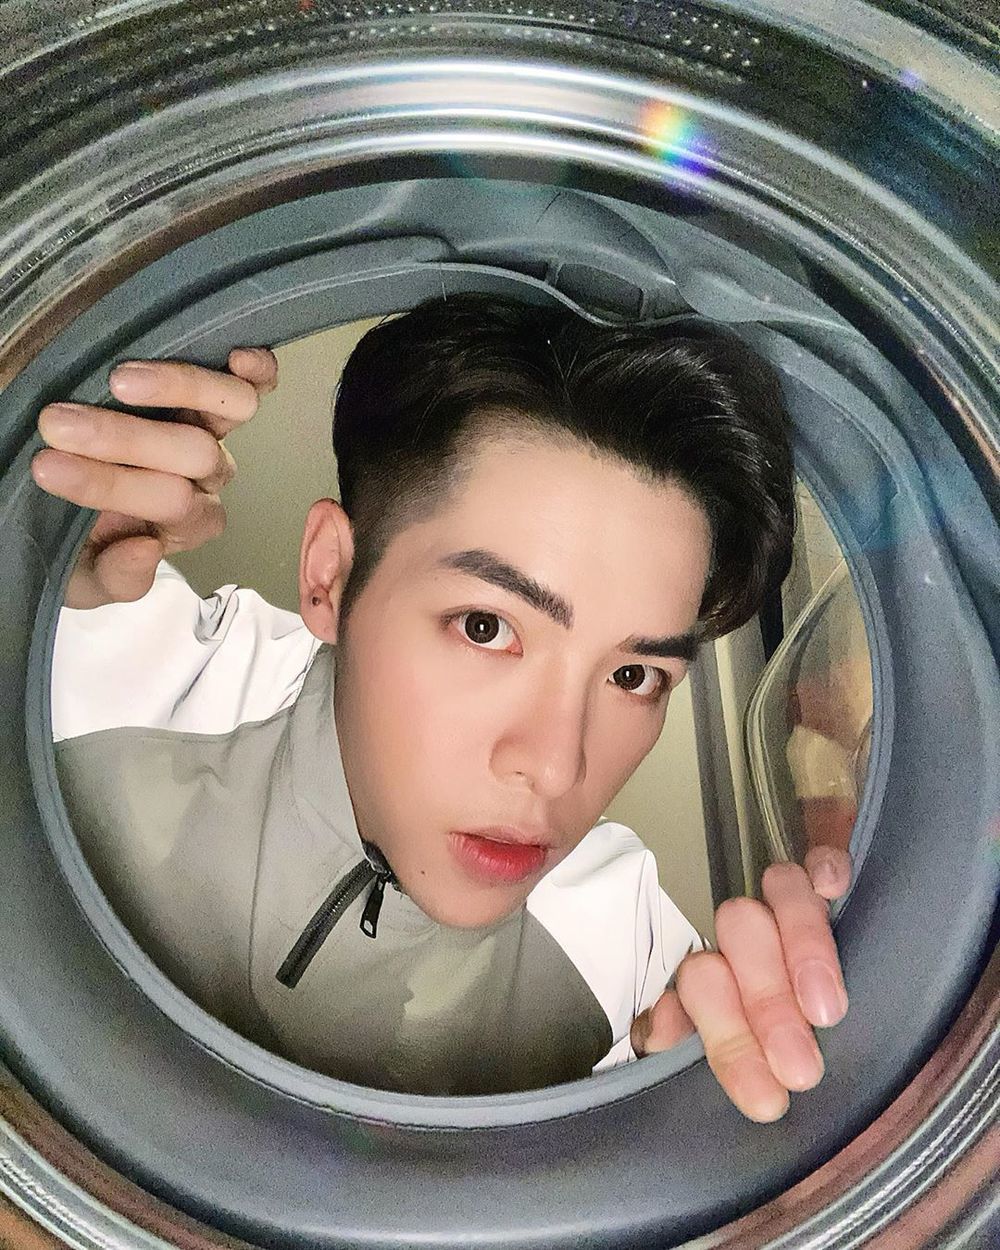  
Hình ảnh chụp từ lồng máy giặt được Đức Phúc đăng tải. (Ảnh: Instagram nhân vật)